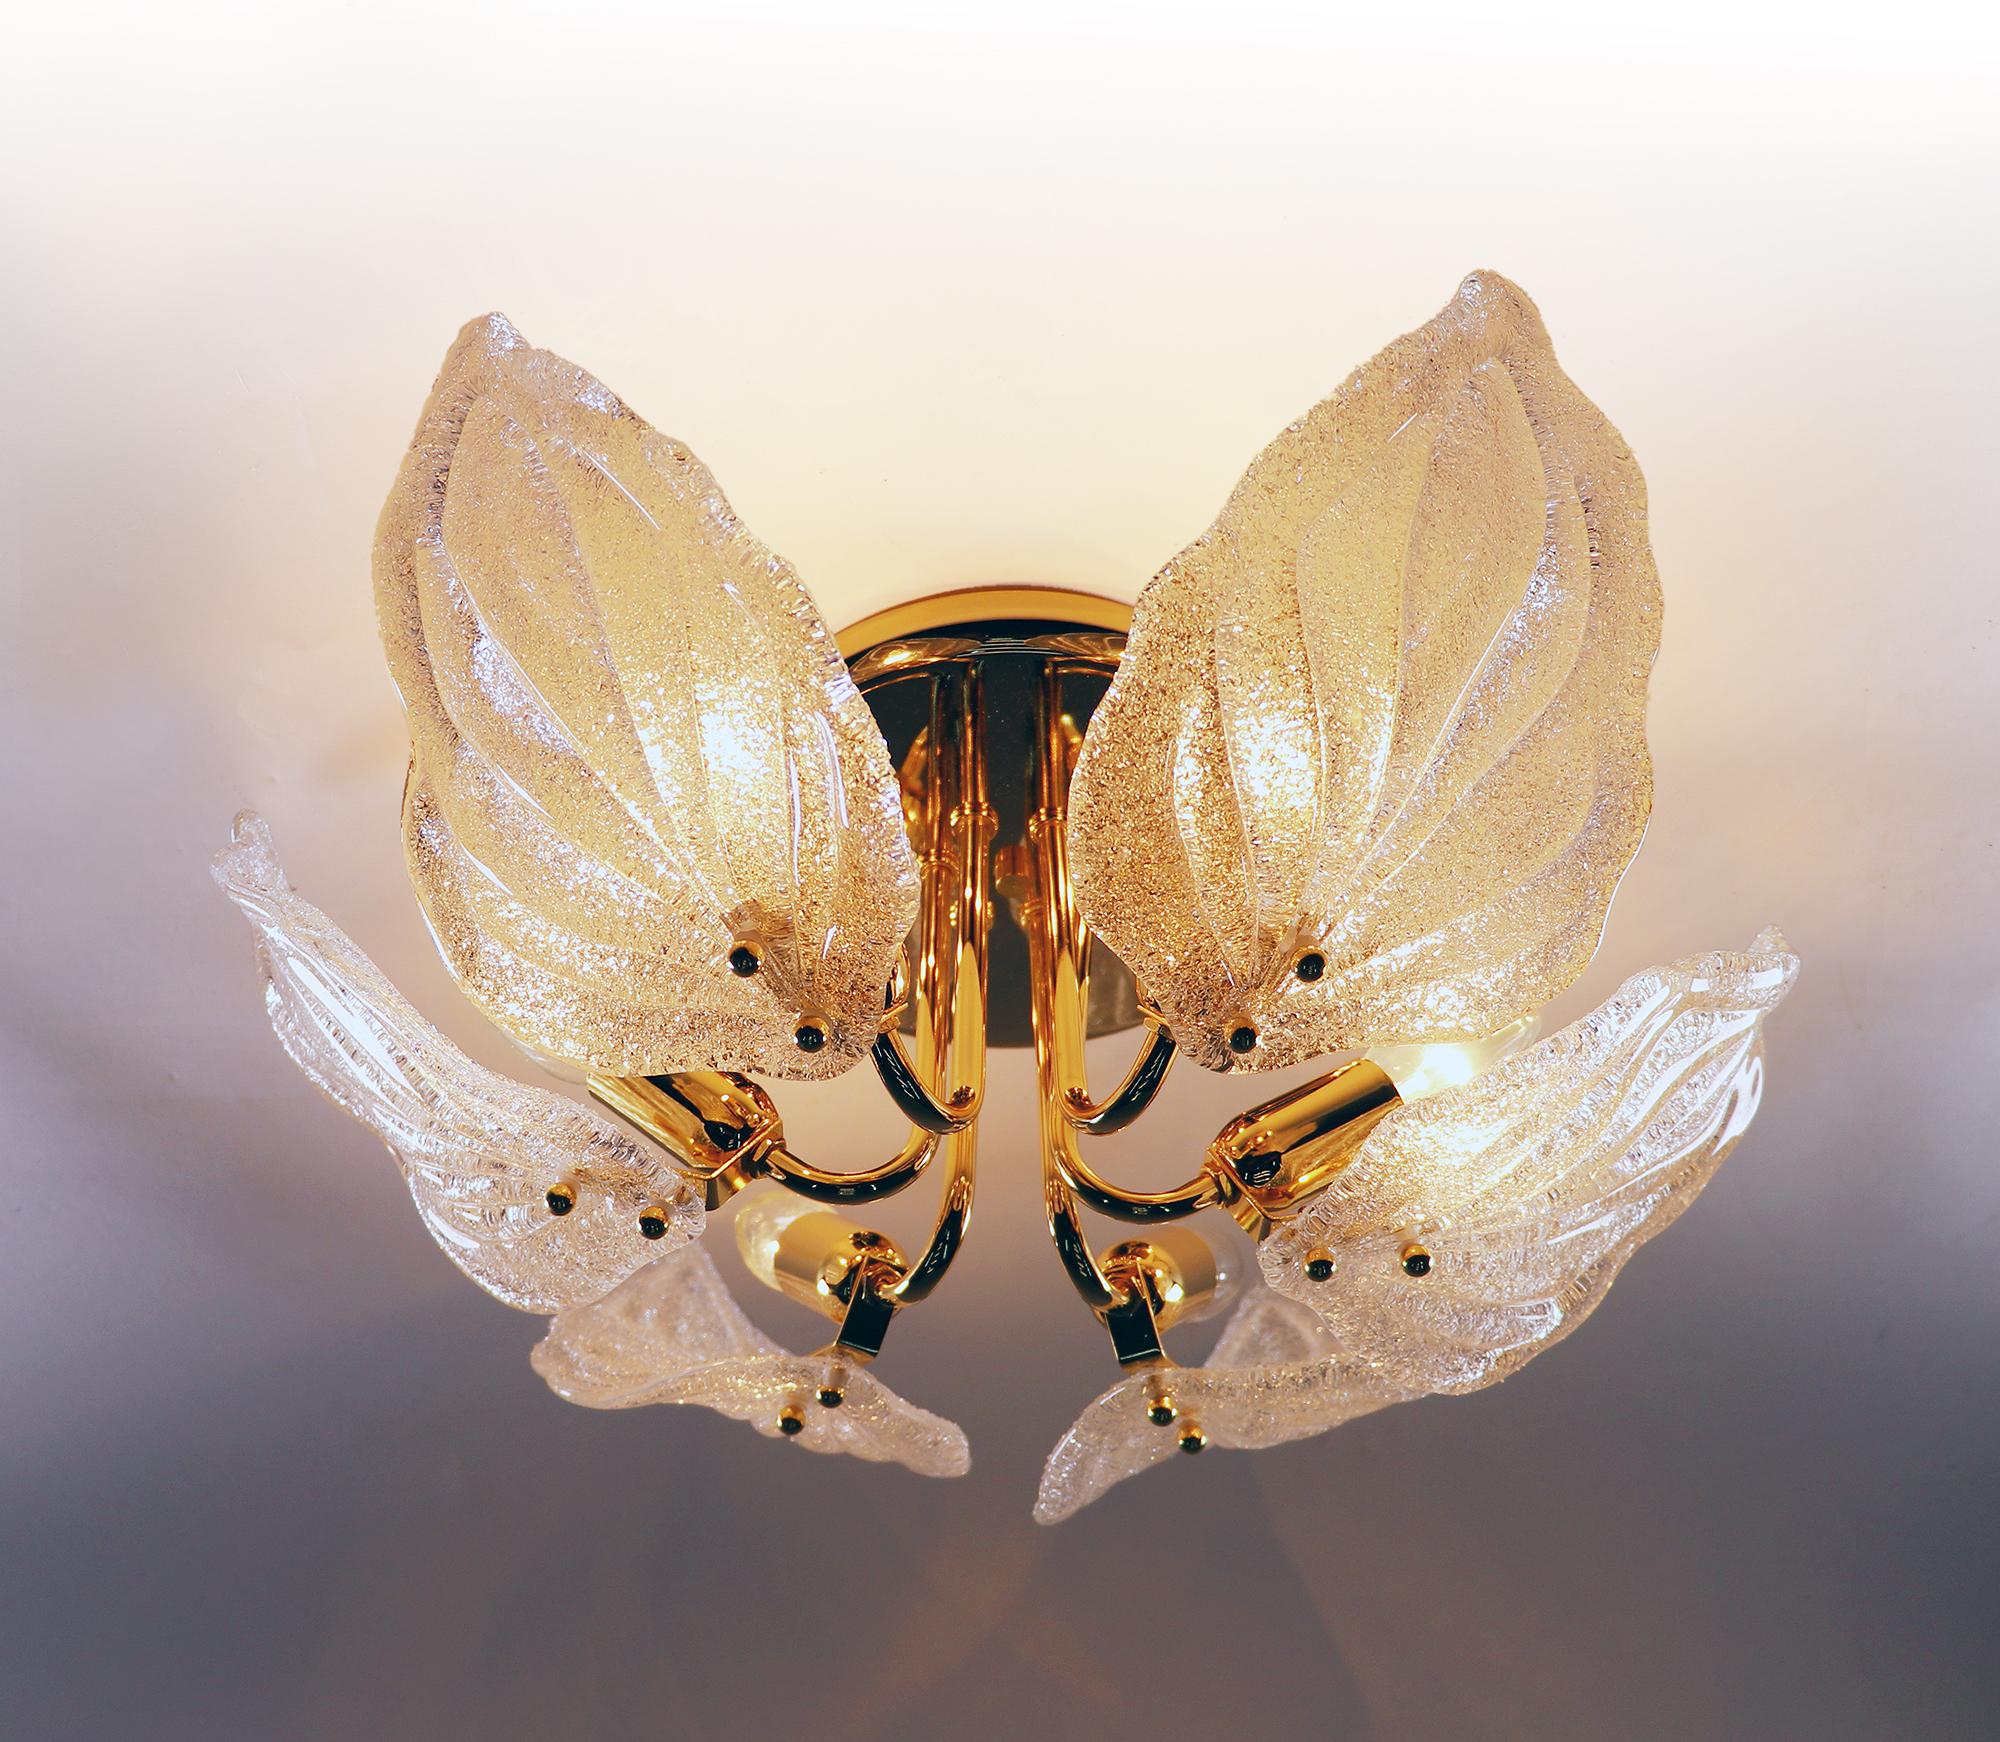 Elegant lustre encastré à feuilles avec des feuilles en verre Murano texturé blanc sur une monture en laiton doré. Le lustre éclaire magnifiquement et offre beaucoup de lumière. Gemme de l'époque. 
Avec ce luminaire, vous faites une déclaration